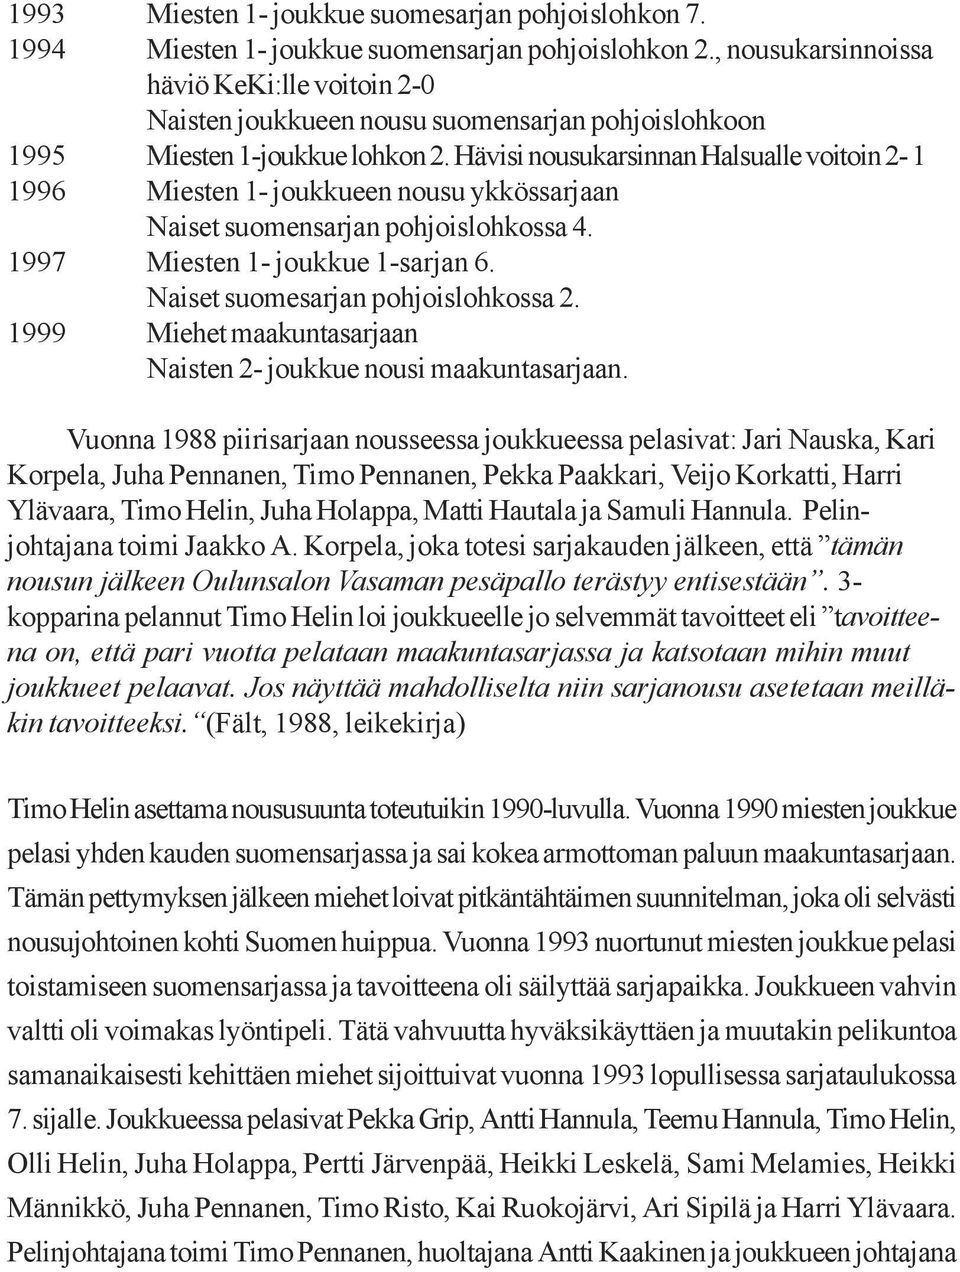 Hävisi nousukarsinnan Halsualle voitoin 2-1 1996 Miesten 1- joukkueen nousu ykkössarjaan Naiset suomensarjan pohjoislohkossa 4. 1997 Miesten 1- joukkue 1-sarjan 6.